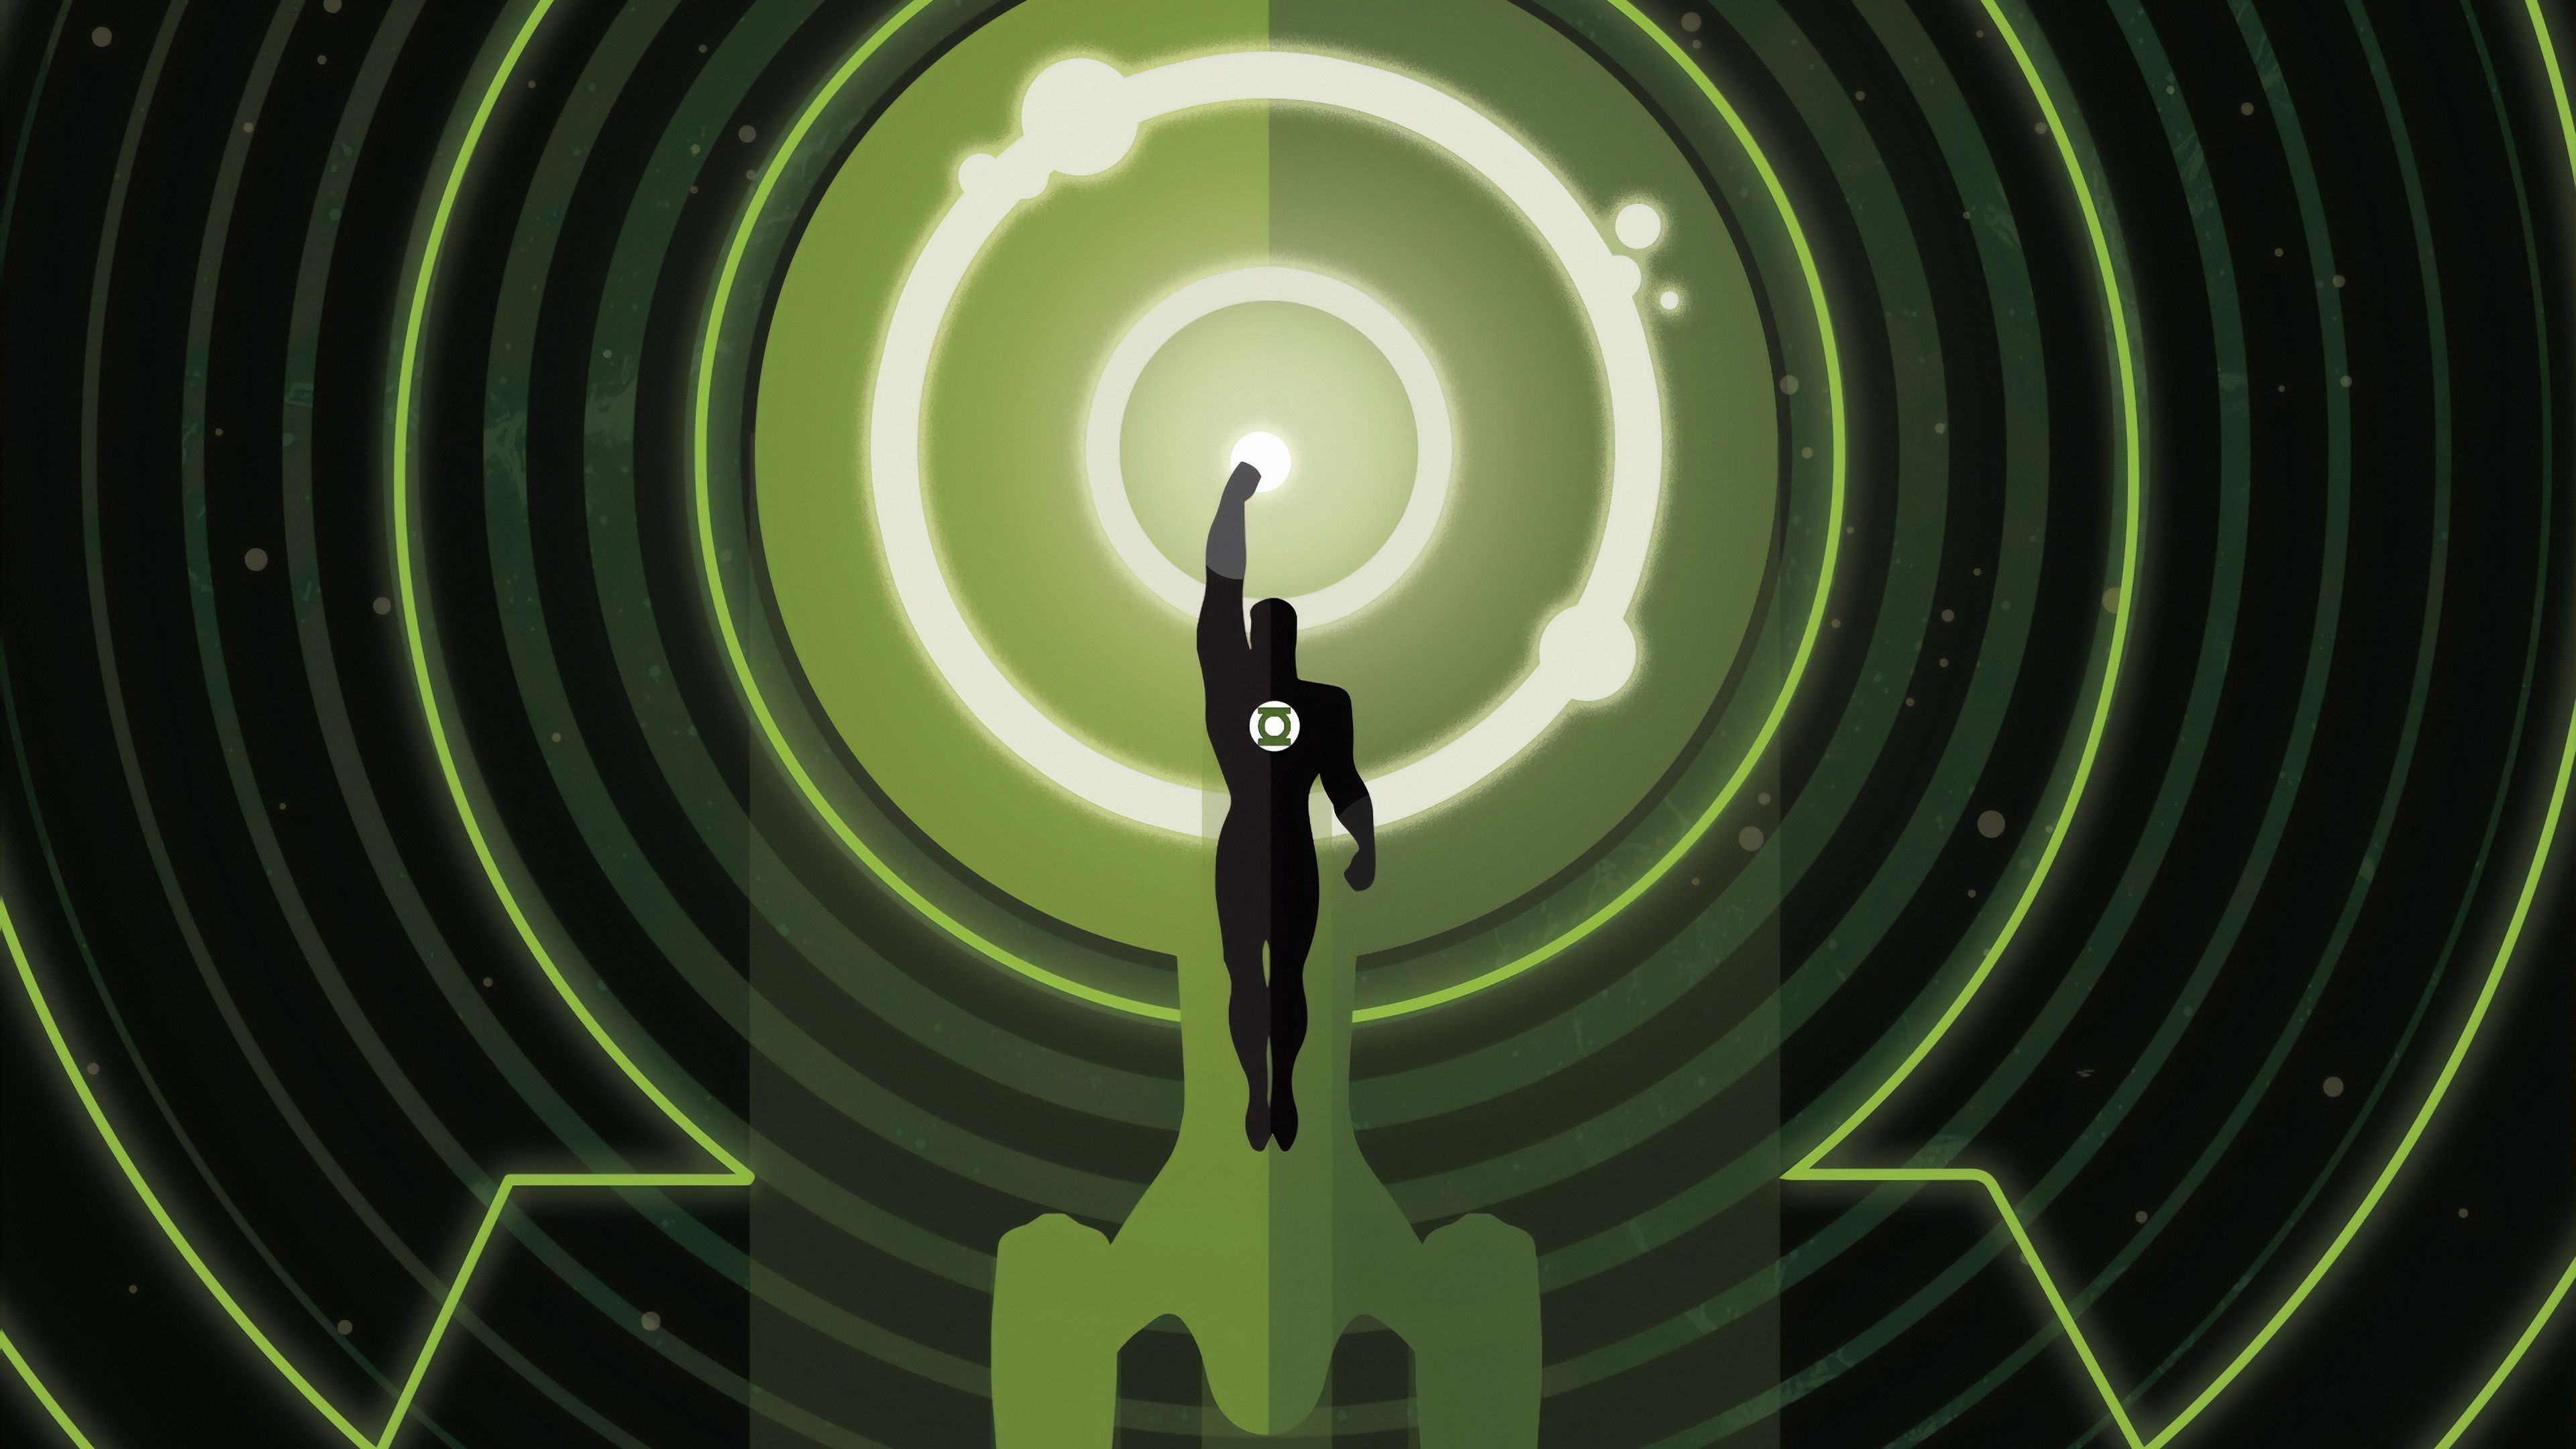 Green Lantern 4k Minimal, HD Superheroes, 4k Wallpaper, Image